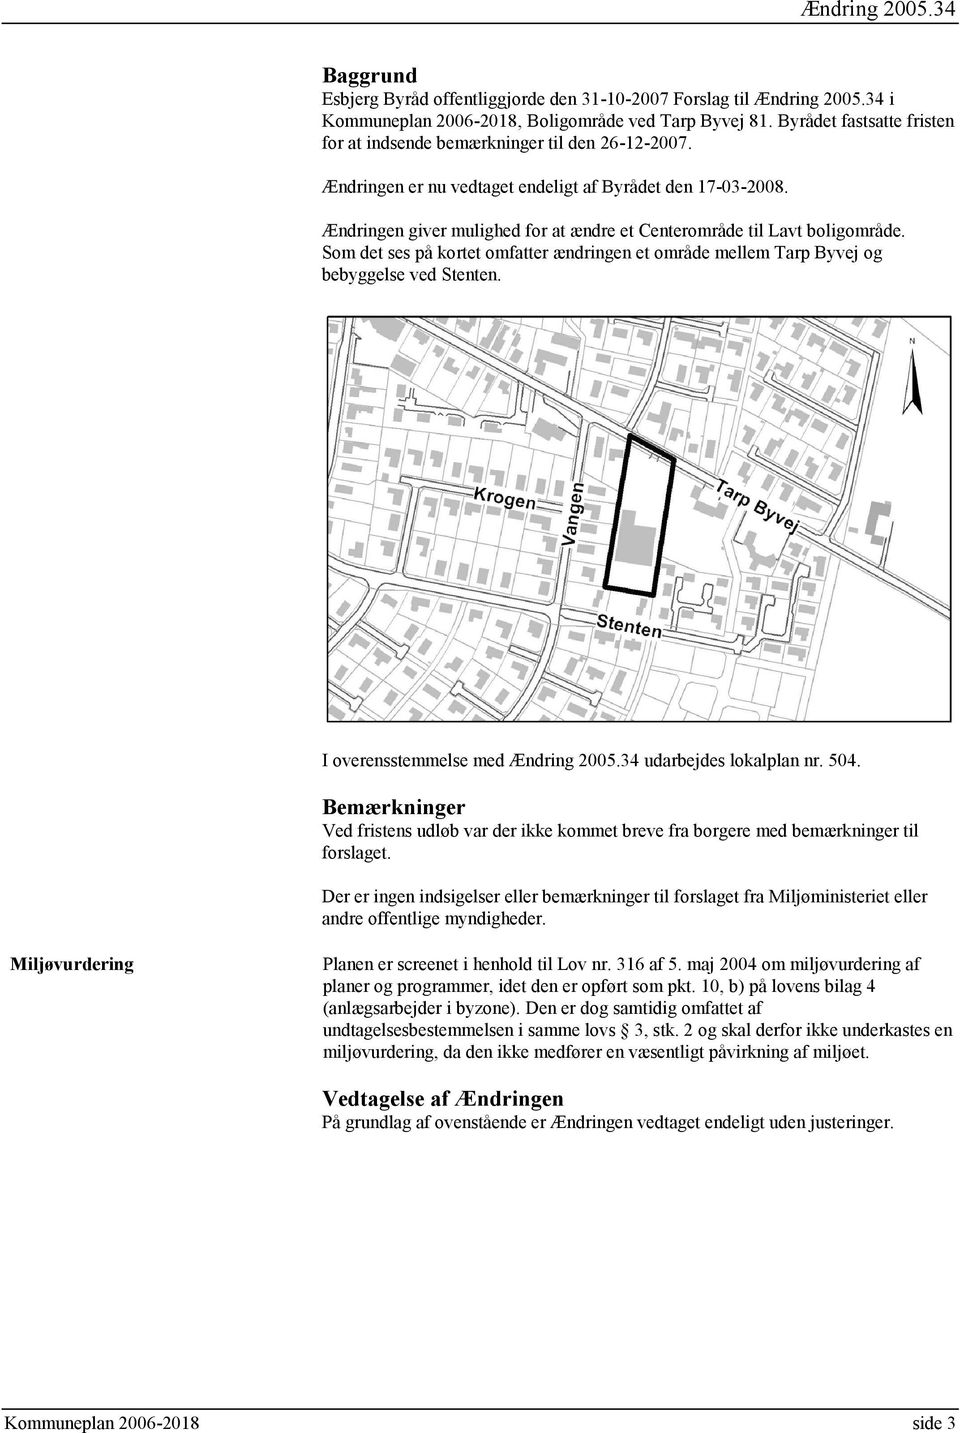 Ændringen giver mulighed for at ændre et Centerområde til Lavt boligområde. Som det ses på kortet omfatter ændringen et område mellem Tarp Byvej og bebyggelse ved Stenten.